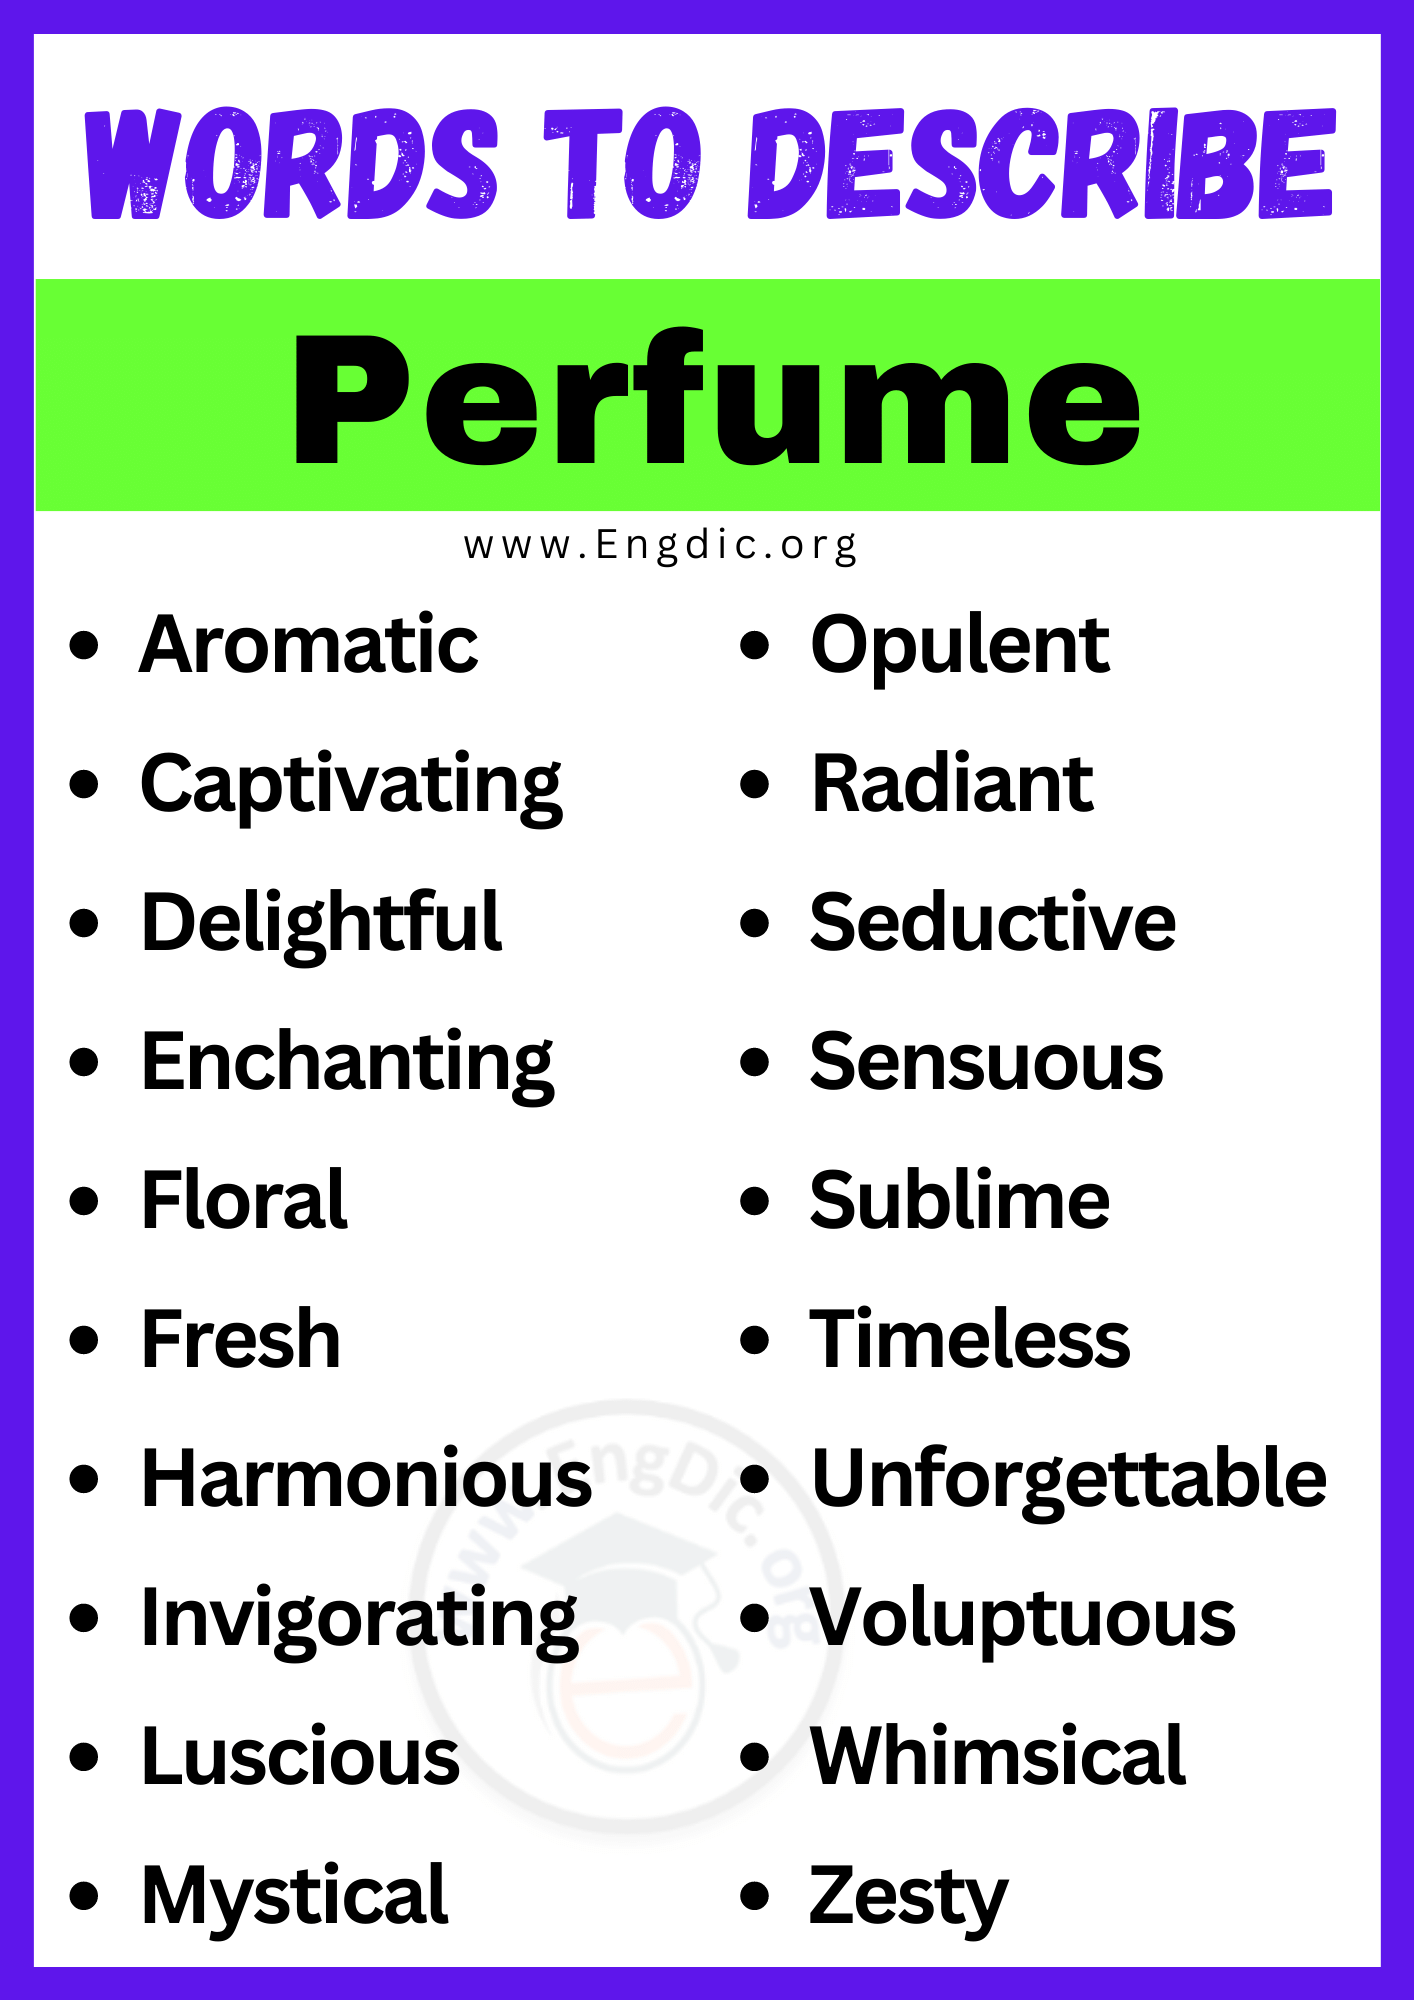 Words to Describe Perfume